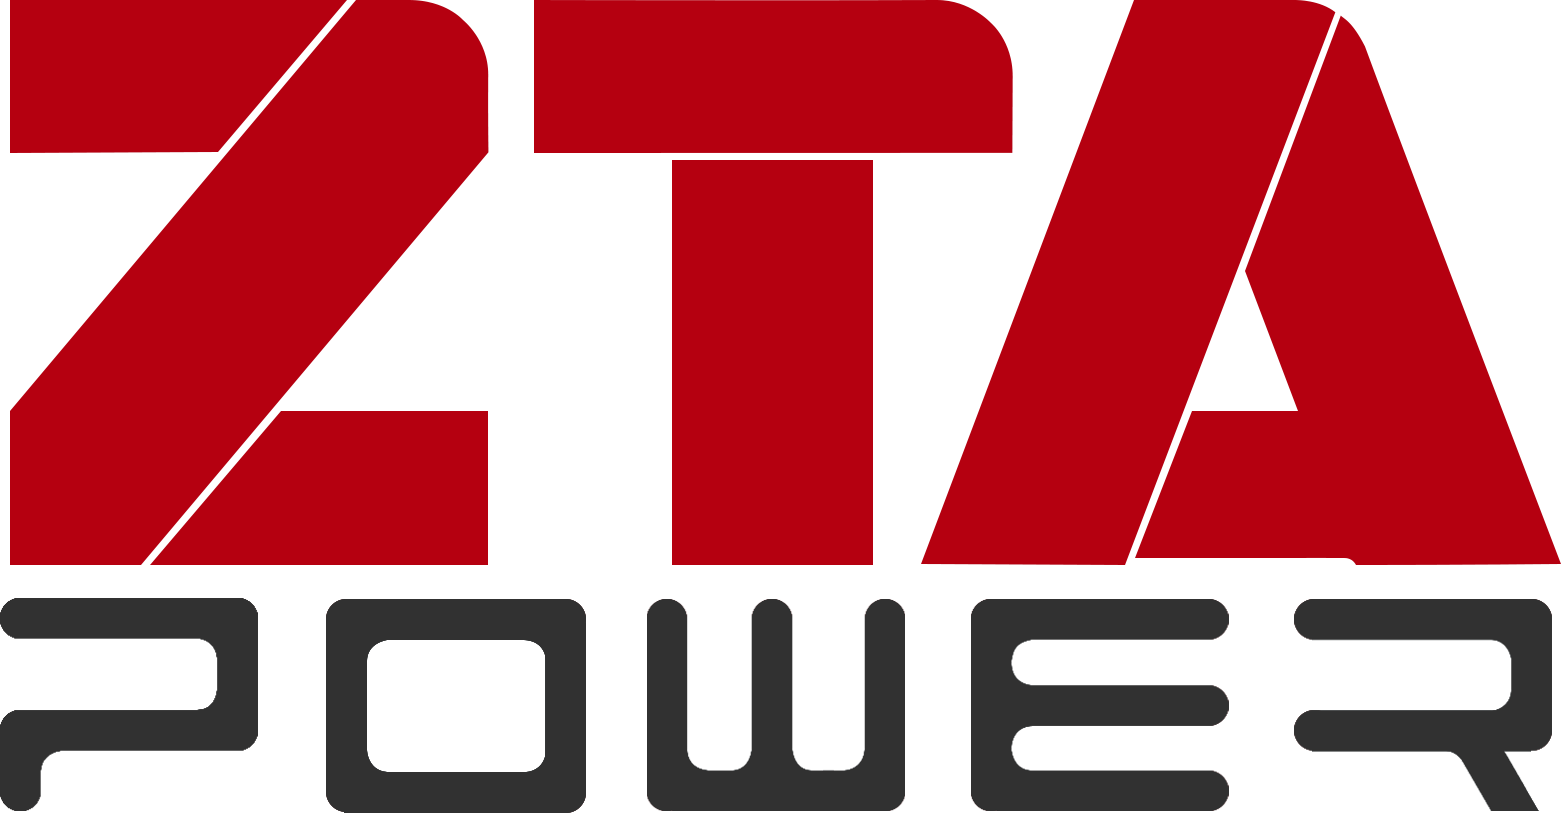 ZTA POWER COMPANY